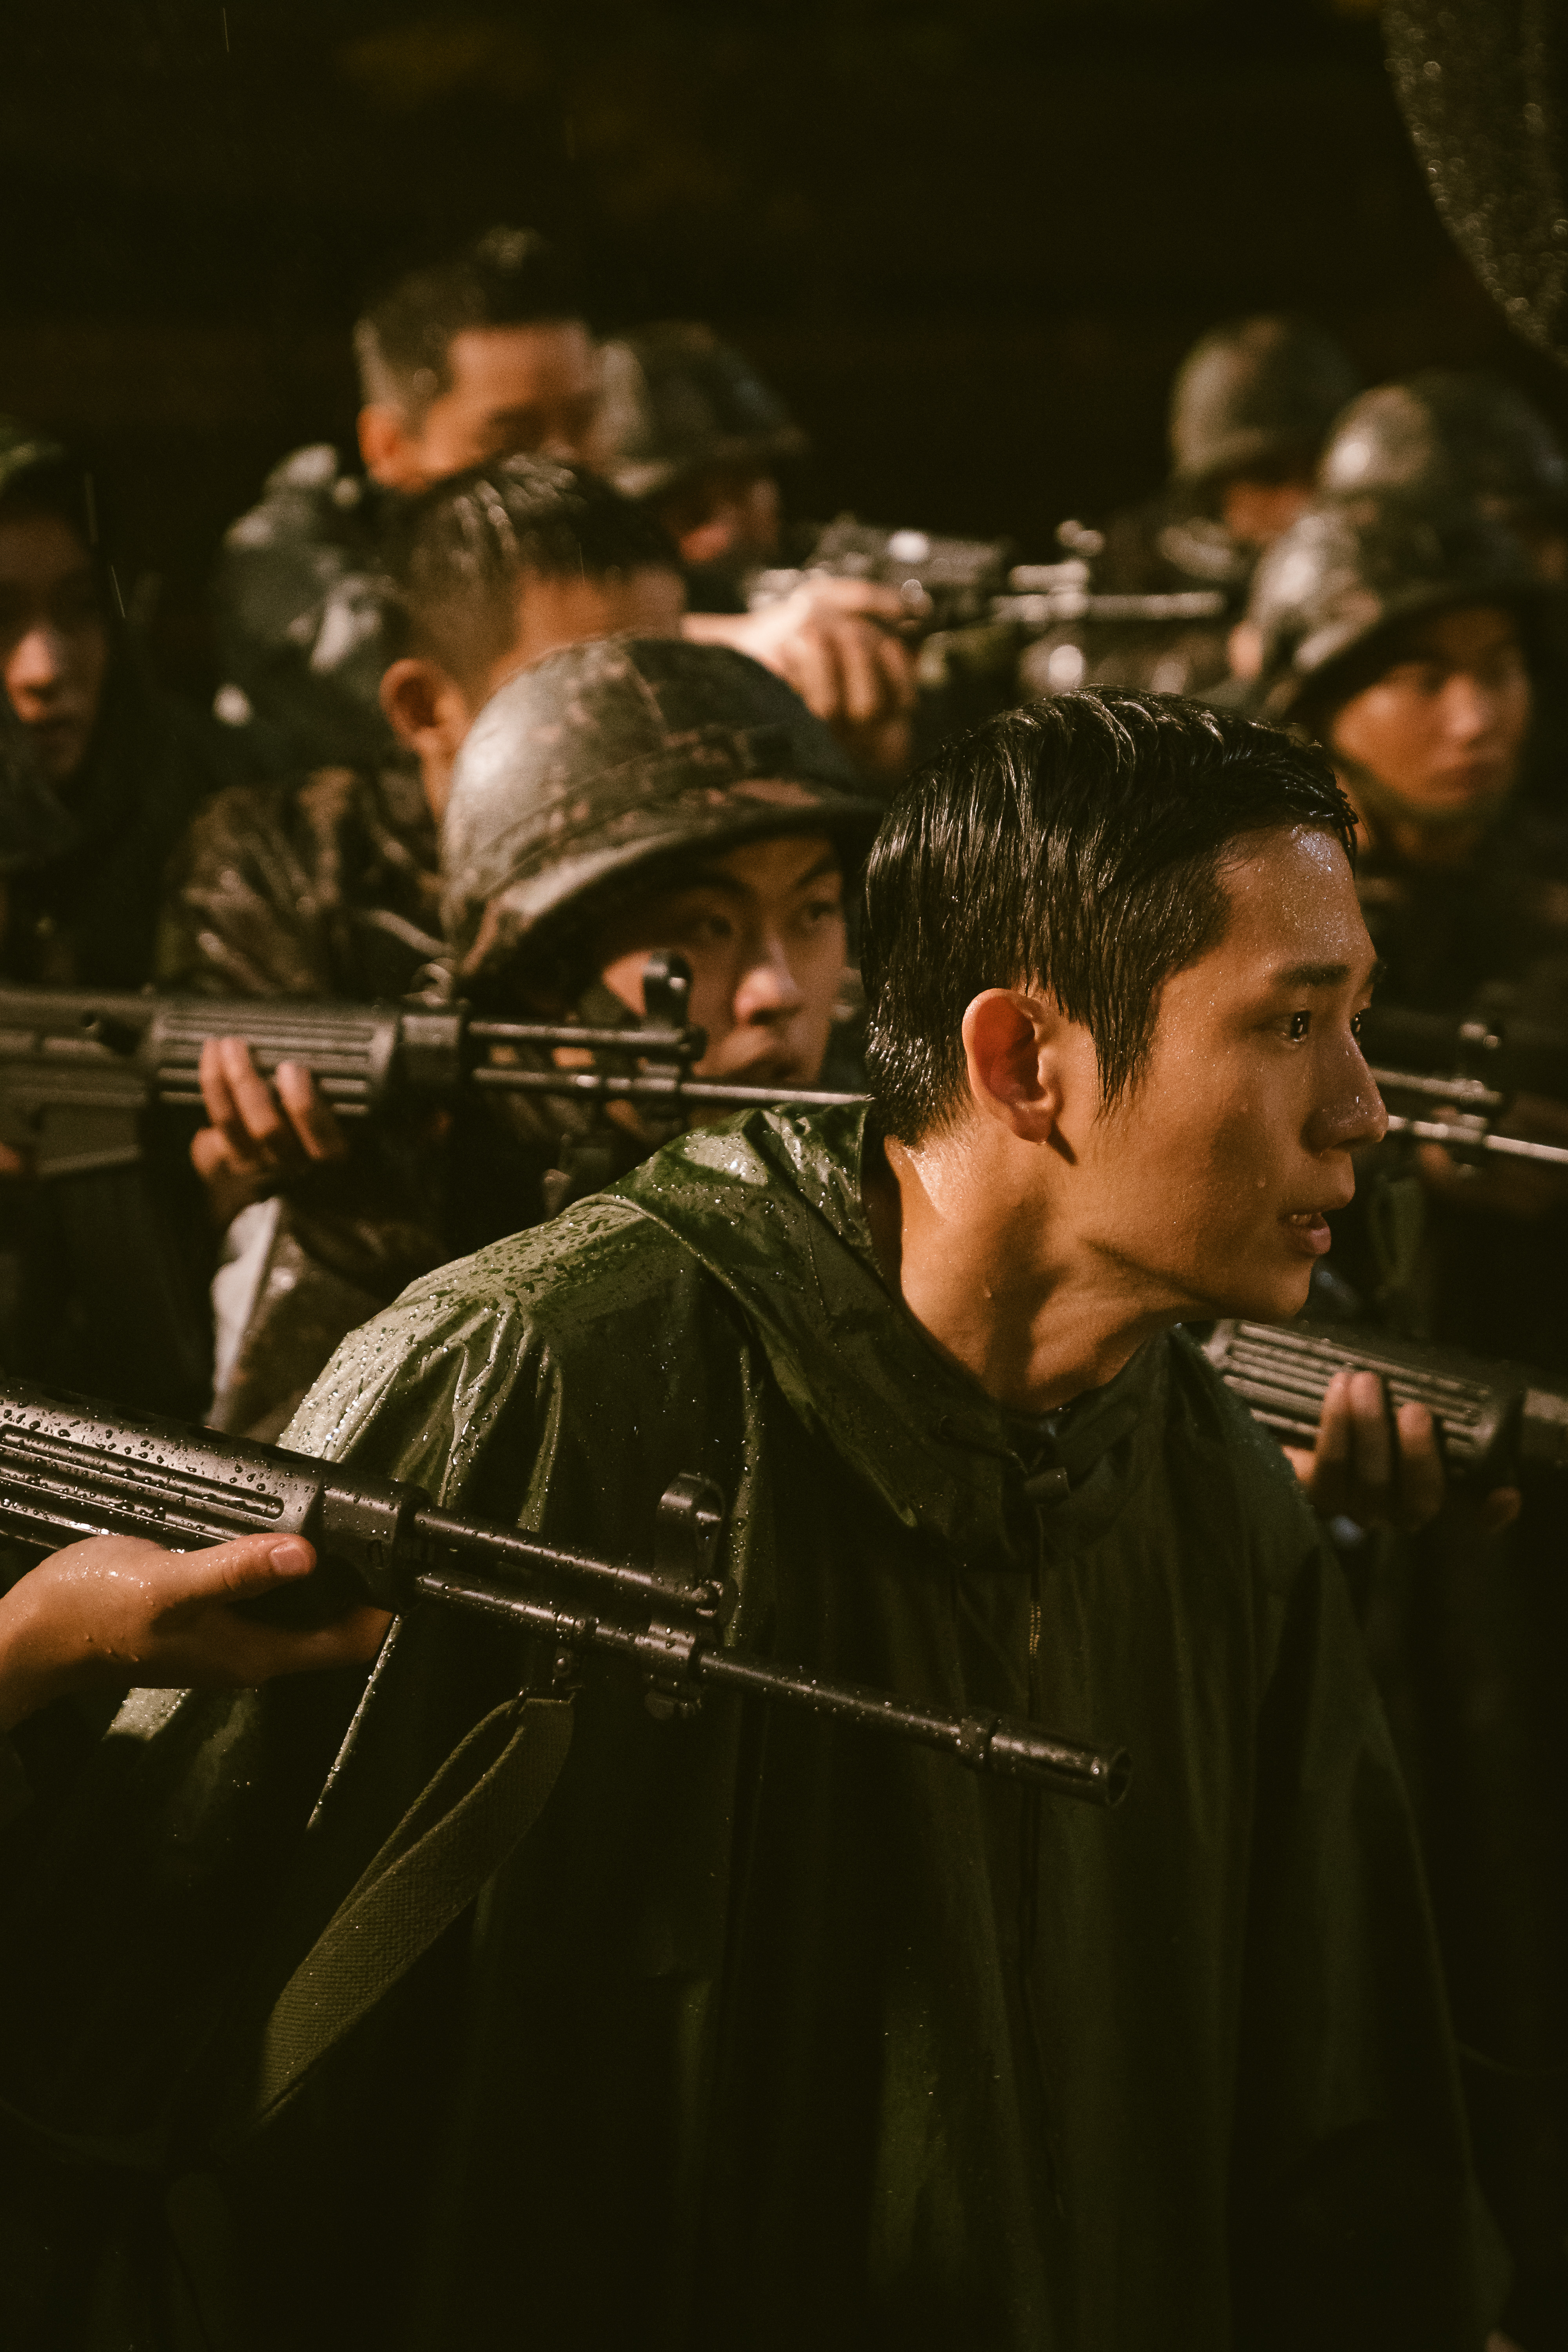 Jung Hae-in in <i></p>
<p>.P.</i> </p>
<p>Jung Hae-in <i>.P.</i></p>
<p>İlk sezonu <i>..</i>, 2021’de piyasaya sürüldü, Güney Kore’nin zorunlu askeri istila sistemi içinde hafif istismar ve bazılarının bundan kurtulmak için umutsuz olmasının nedenleri. Şovun unvanı, askeri firarları izlemek ve yakalamakla görevli olan “Deserter Pursuit” adlı bir asker ekibini ifade ediyor. Sadece altı bölüme sahip olmasına rağmen, ilk sezon eski istikrarlarla derinden yankılandı ve hatta Güney Kore Savunma Bakanlığı’na orduda şiddet ve istismar olaylarının düşüşte olduğunu açıklamaya teşvik etti. Yönetmen Han Jun-hee ikinci sezonun yanı sıra sırasıyla Jun-ho ve dizinin ana ikilisi Han Ho-yeol oynayan aktörler Jung Hae-in ve Koo Kyo-hwan için geri dönüyor.</p>
<h2><span id=